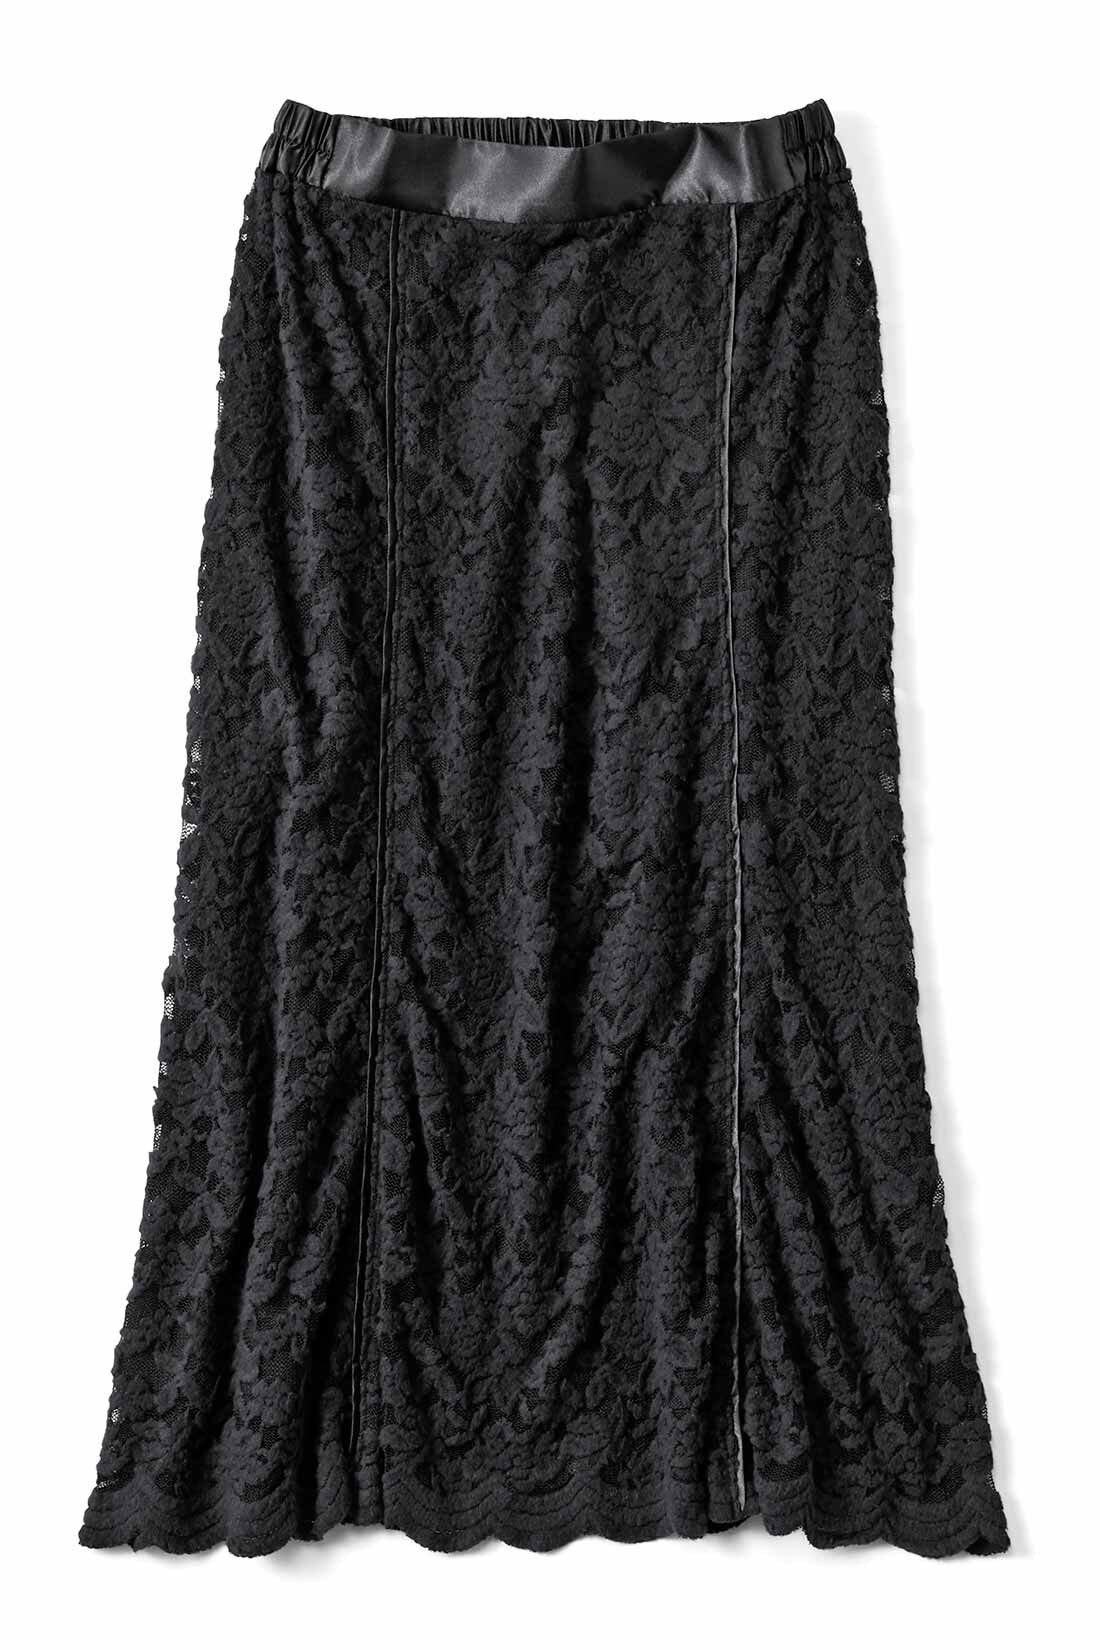 IEDIT|IEDIT[イディット]　帯電防止インナーがうれしい 起毛レーススカート〈ブラック〉|ブラック サテンテープの切り替えが作るきれいな縦長シルエットが魅力。